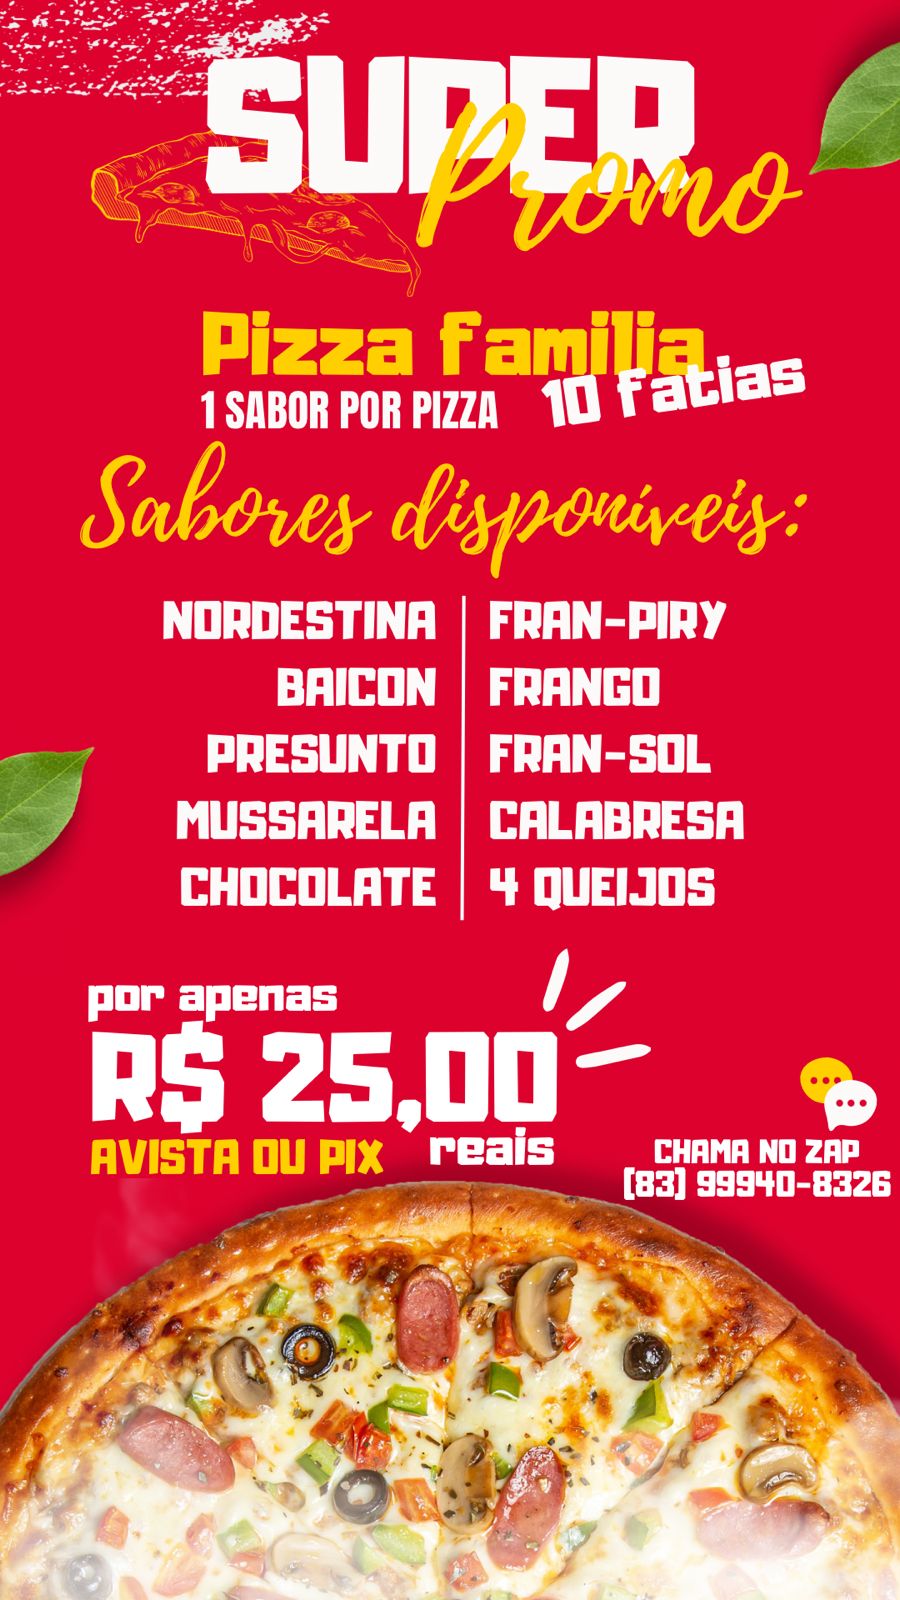 Promoção: Super promoção Pizza Família